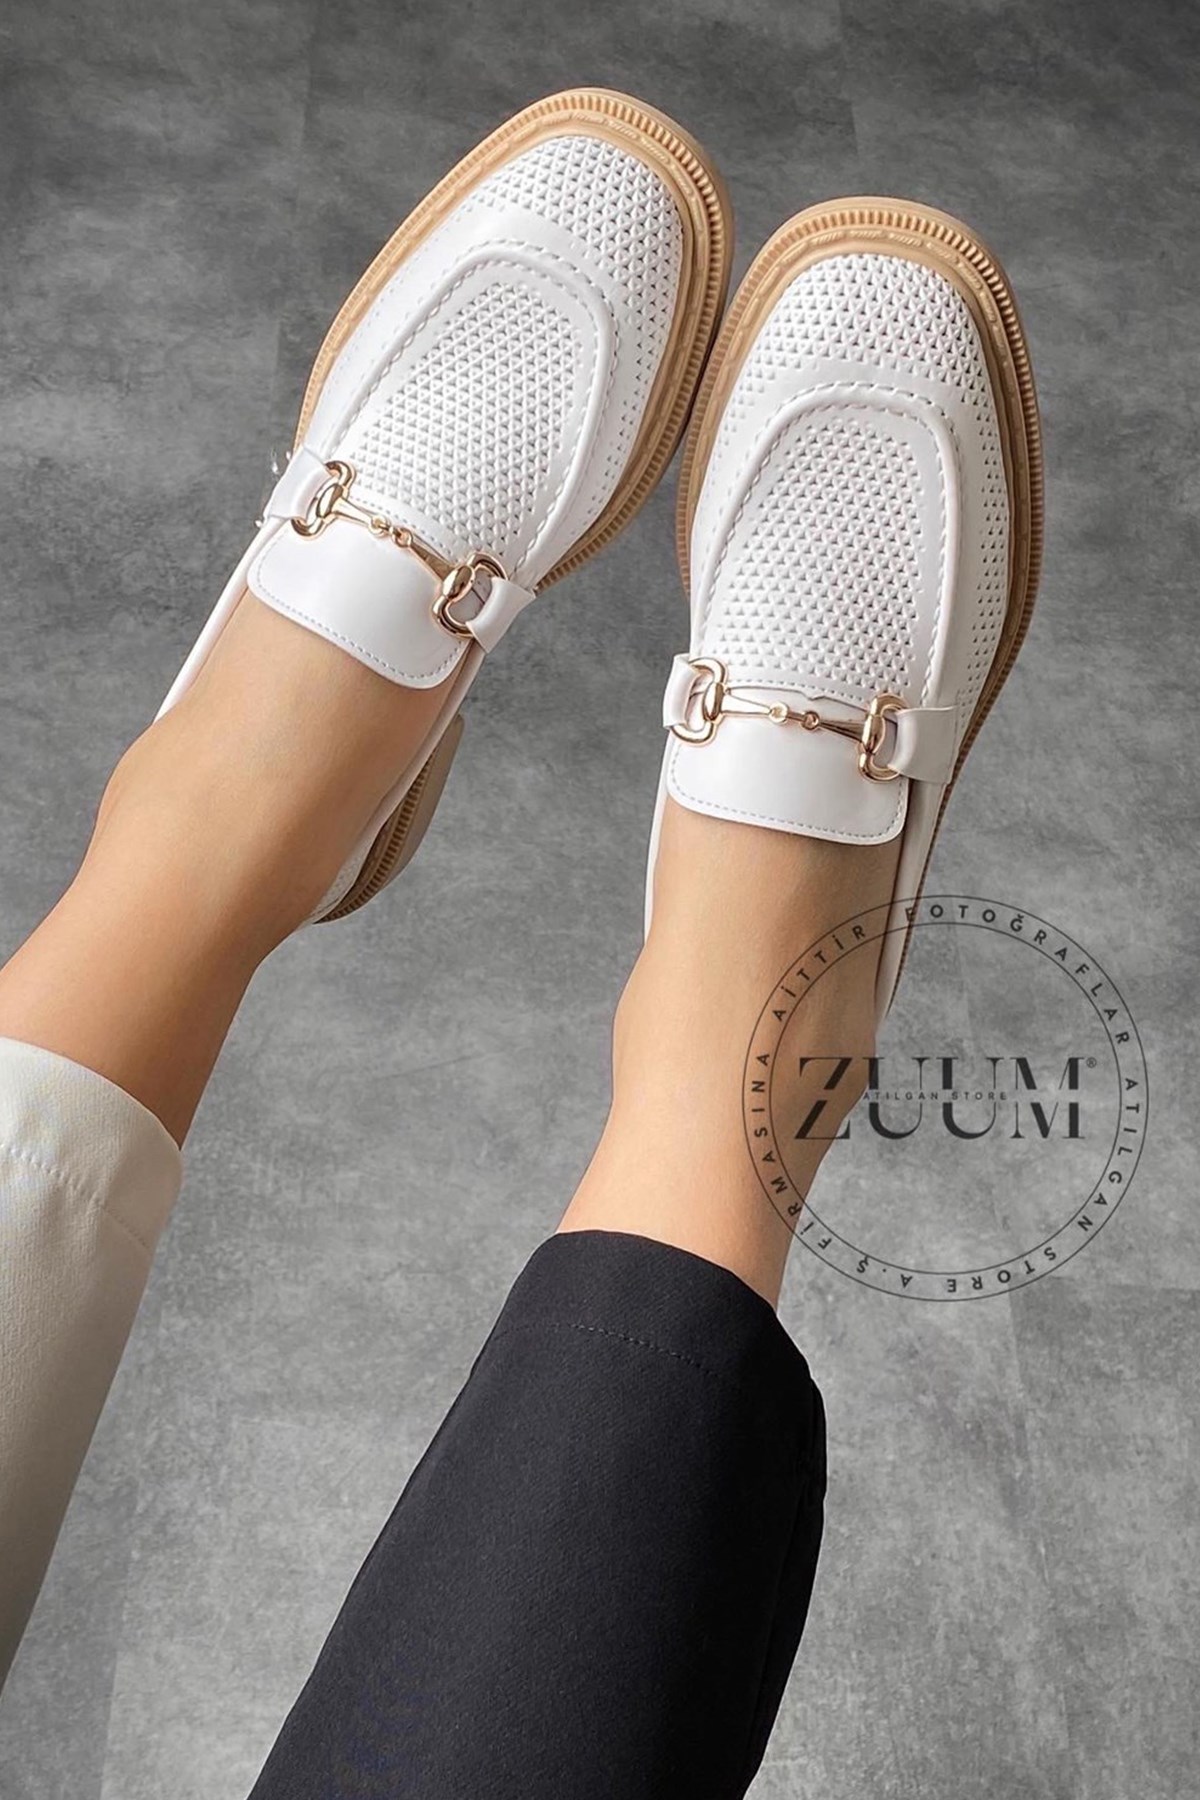 Jena Makosen Kadın Ayakkabı - Beyaz Deri